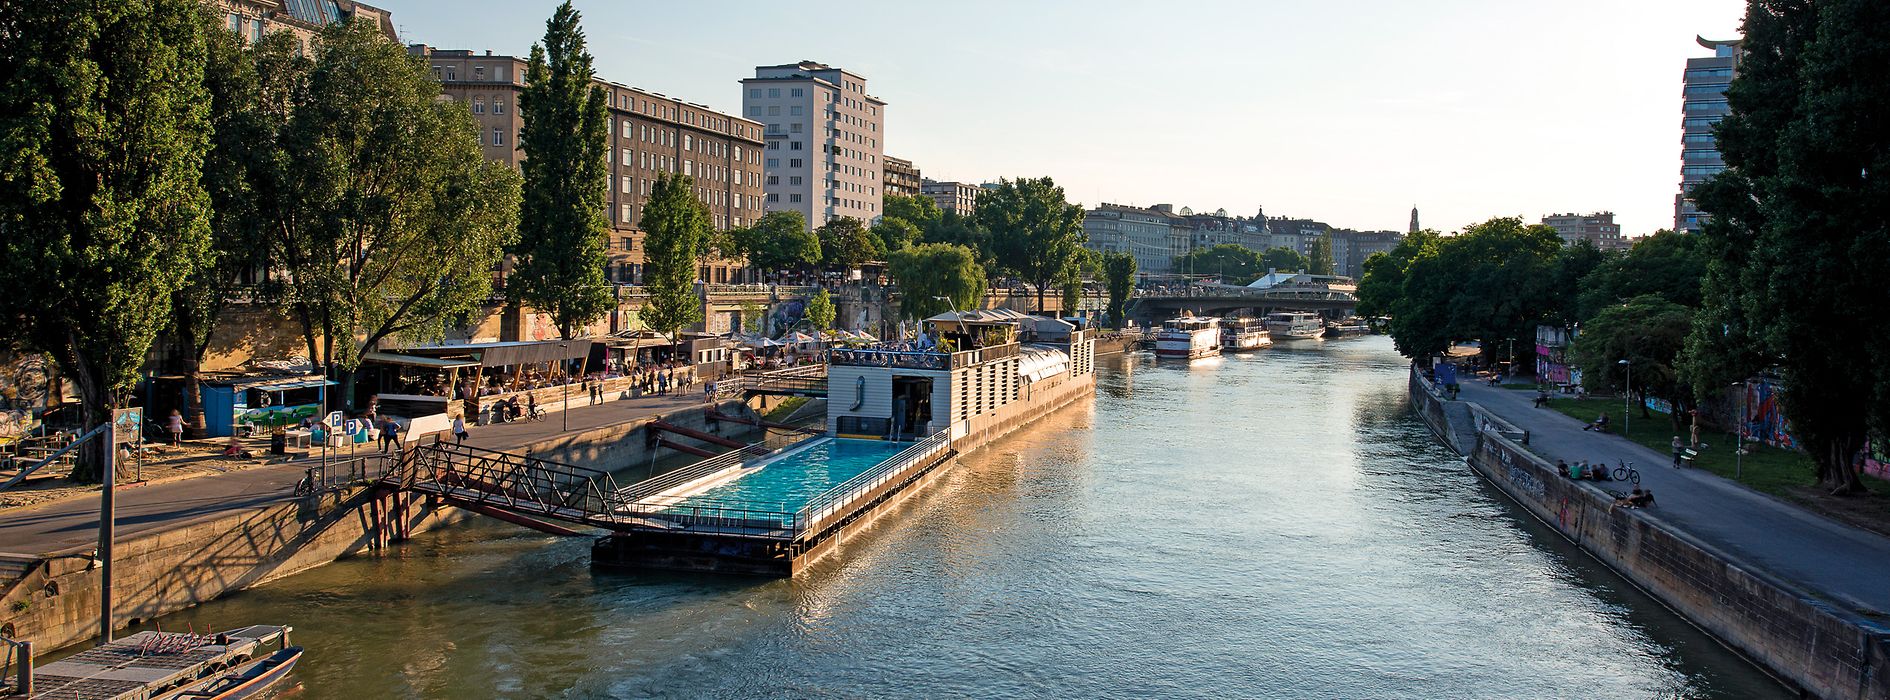 Badeschiff am Donaukanal bei Sonnenschein